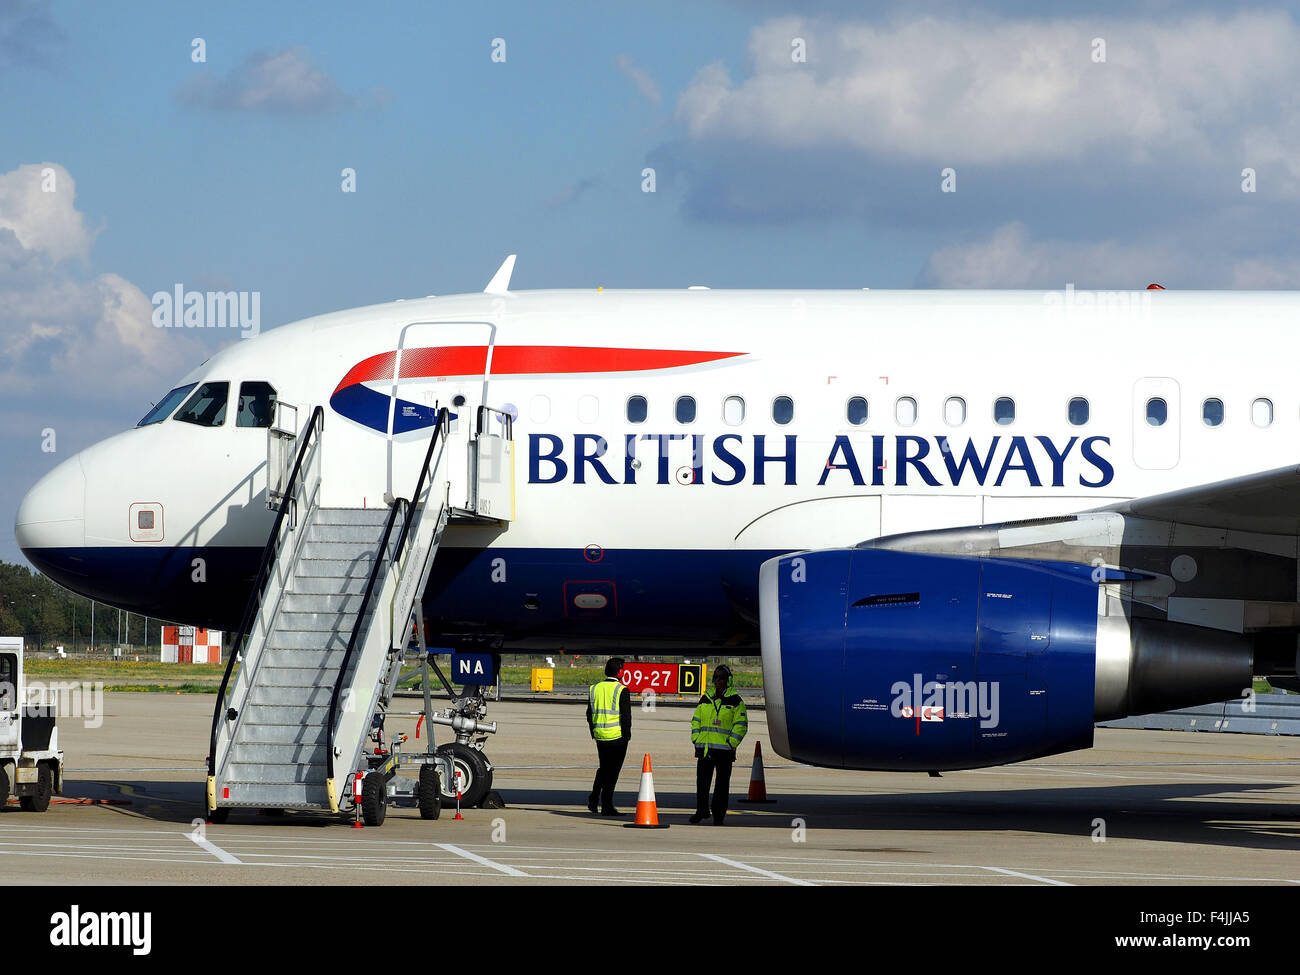 British Airways Airbus A318-100 à l'aéroport de London City. La Grande-Bretagne, Royaume-Uni Banque D'Images